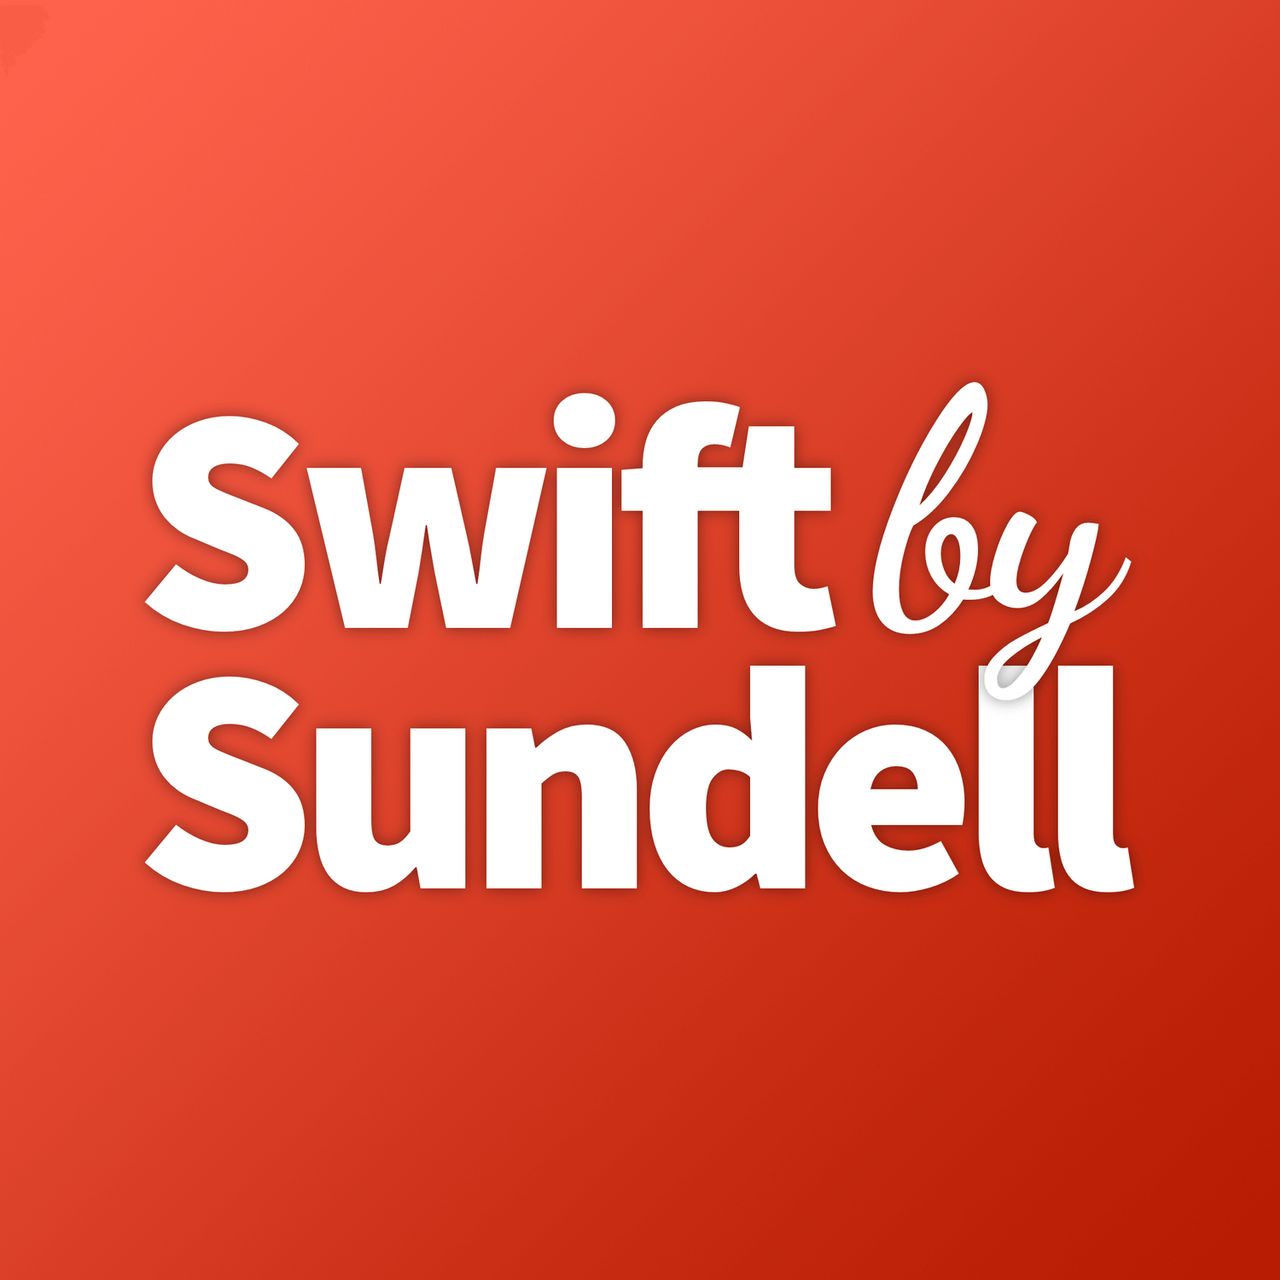 Avoiding singletons in Swift